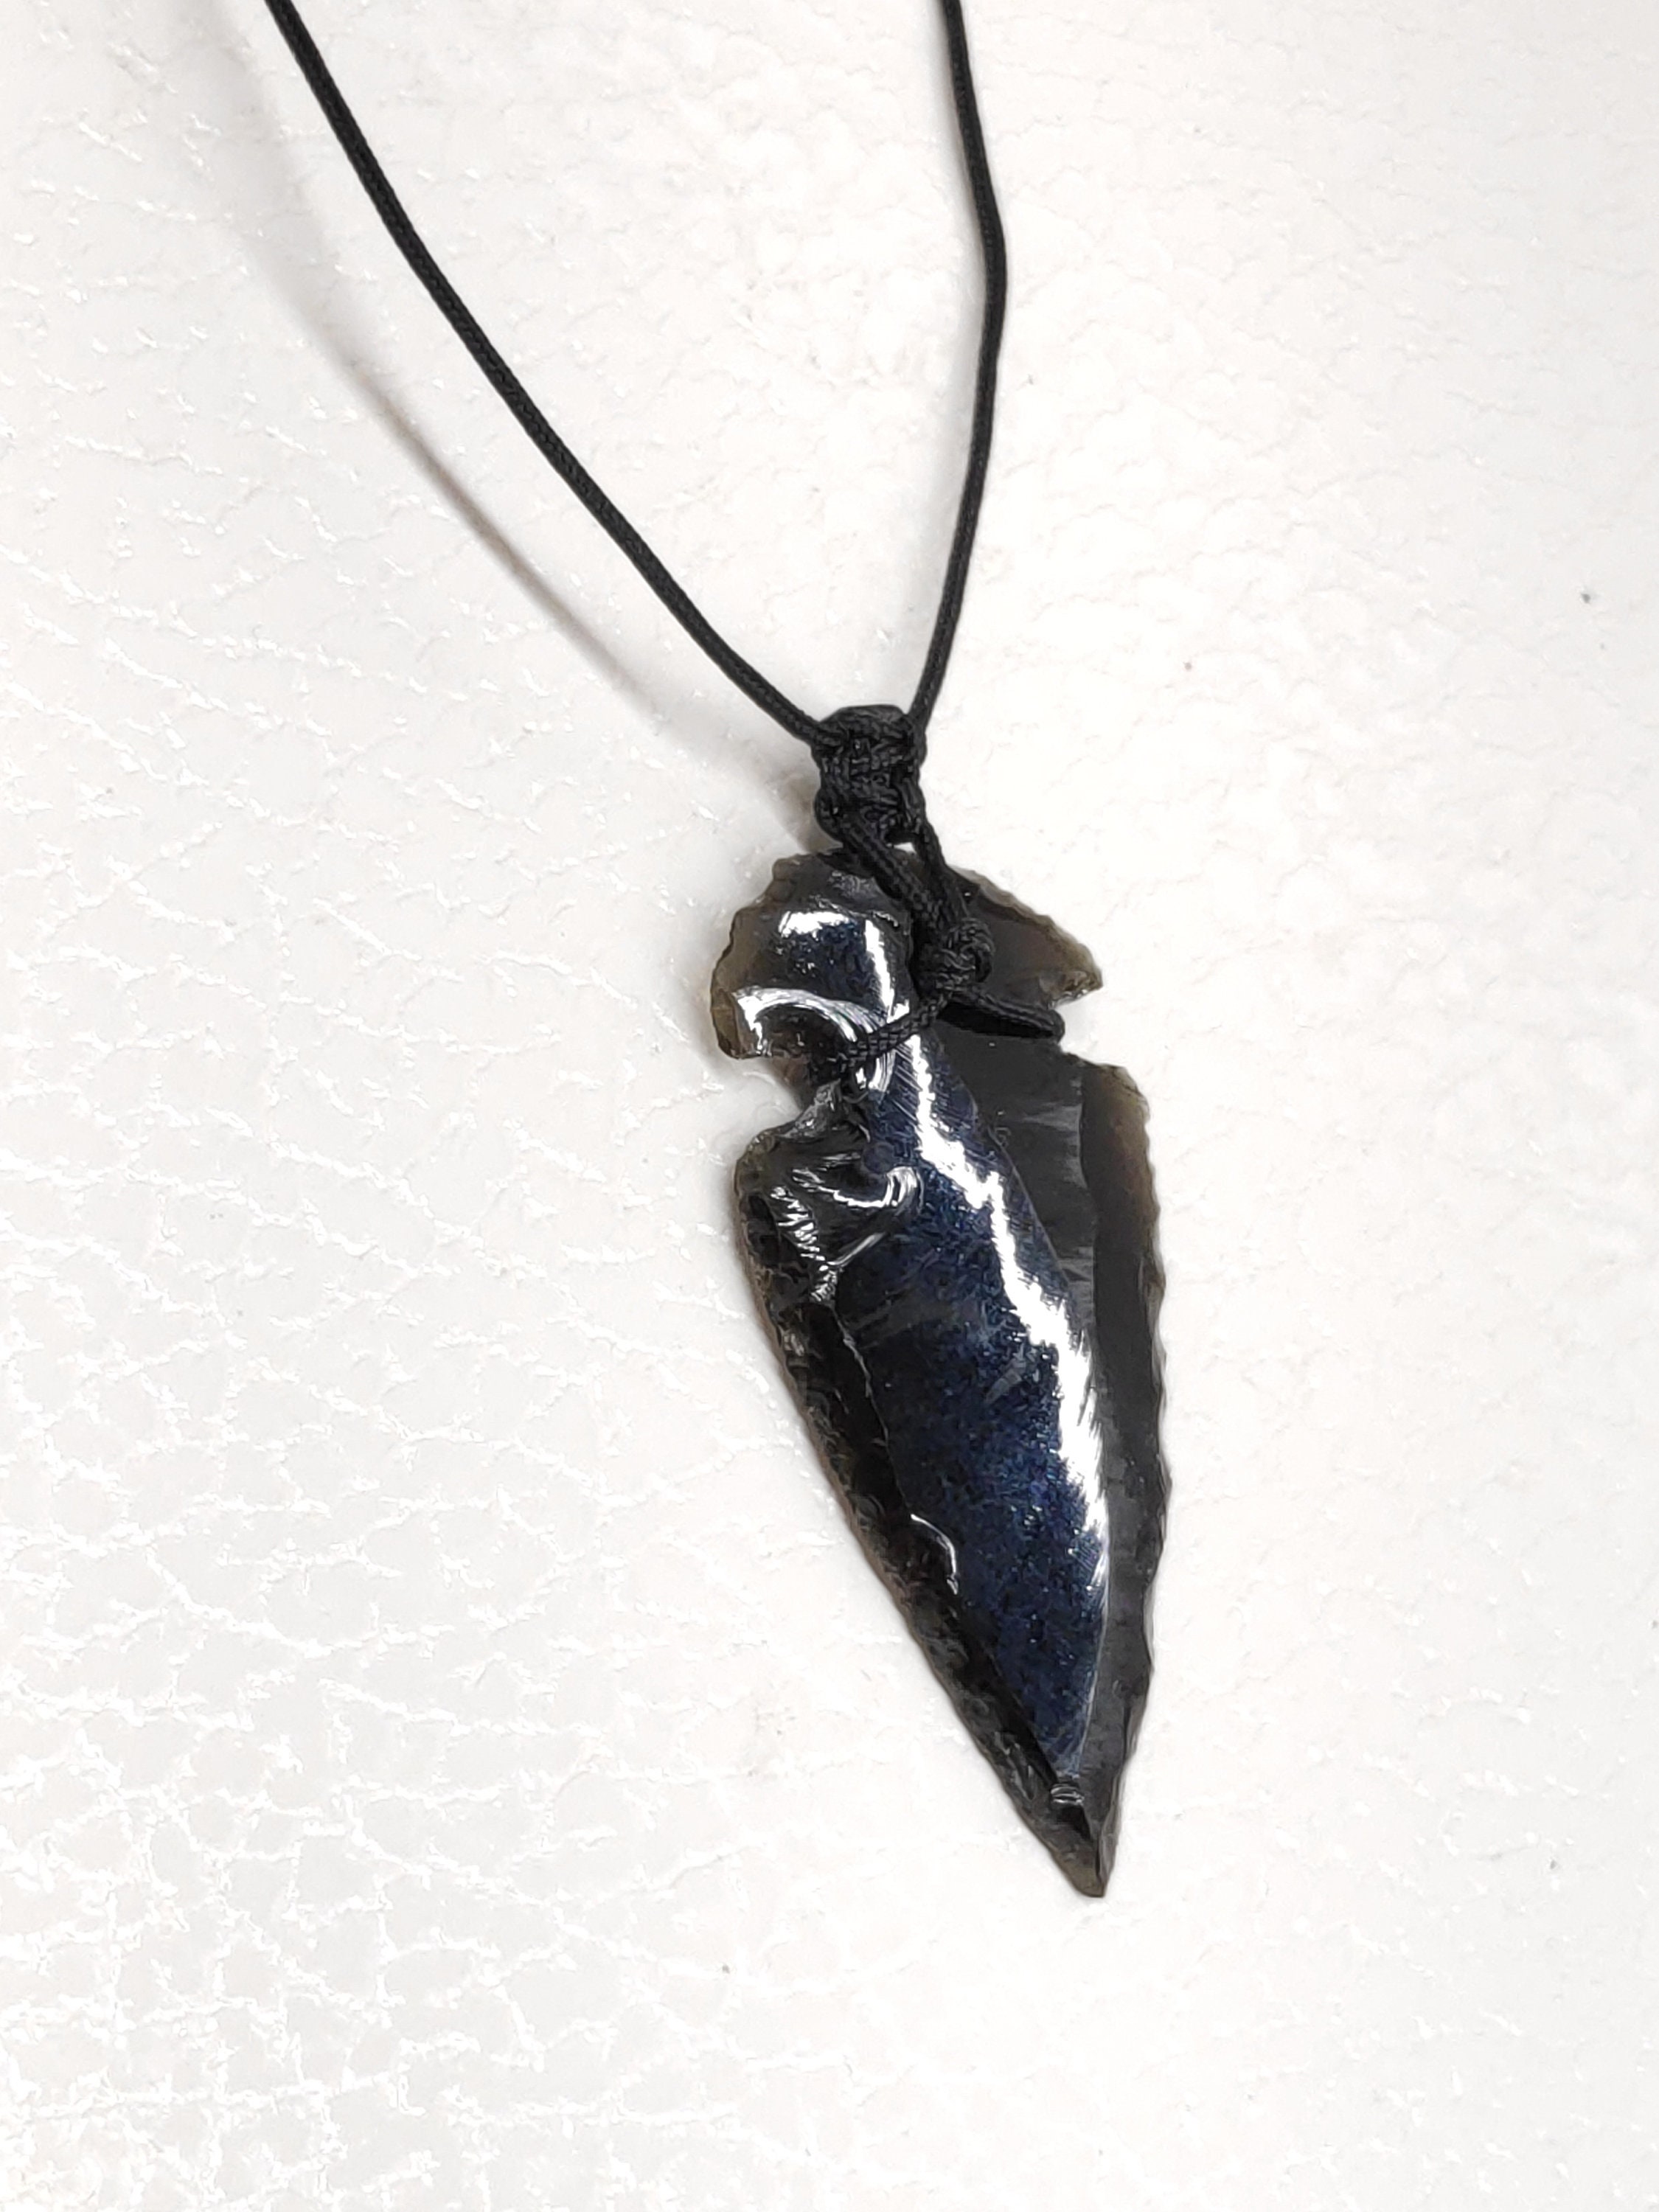 How To Make a Stone Arrow Pendant With an Obsidian Arrowhead - YouTube